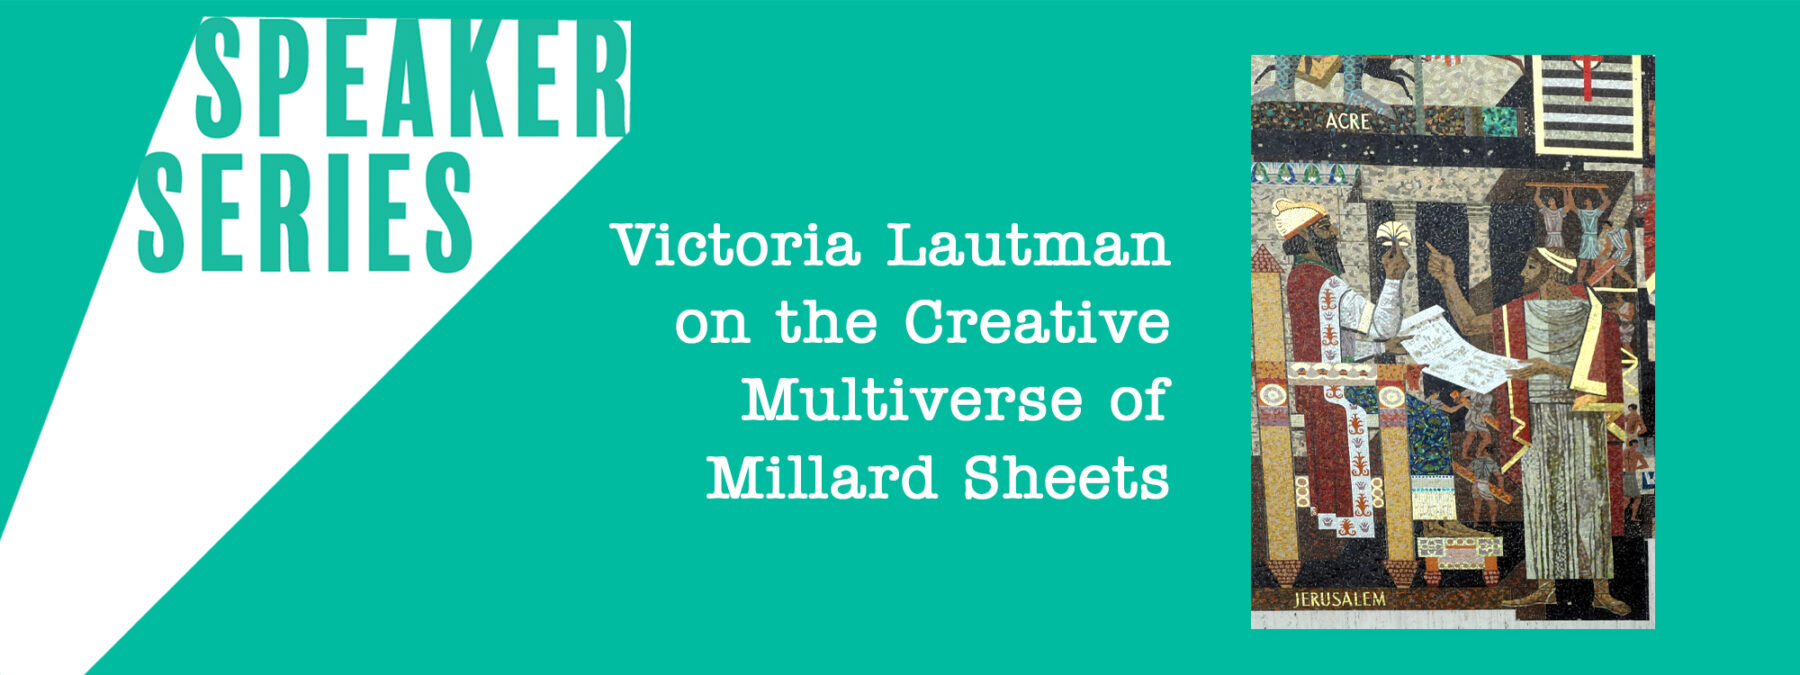 Speaker Series Victoria Lautman on the Creative Multiverse of Millard Sheets